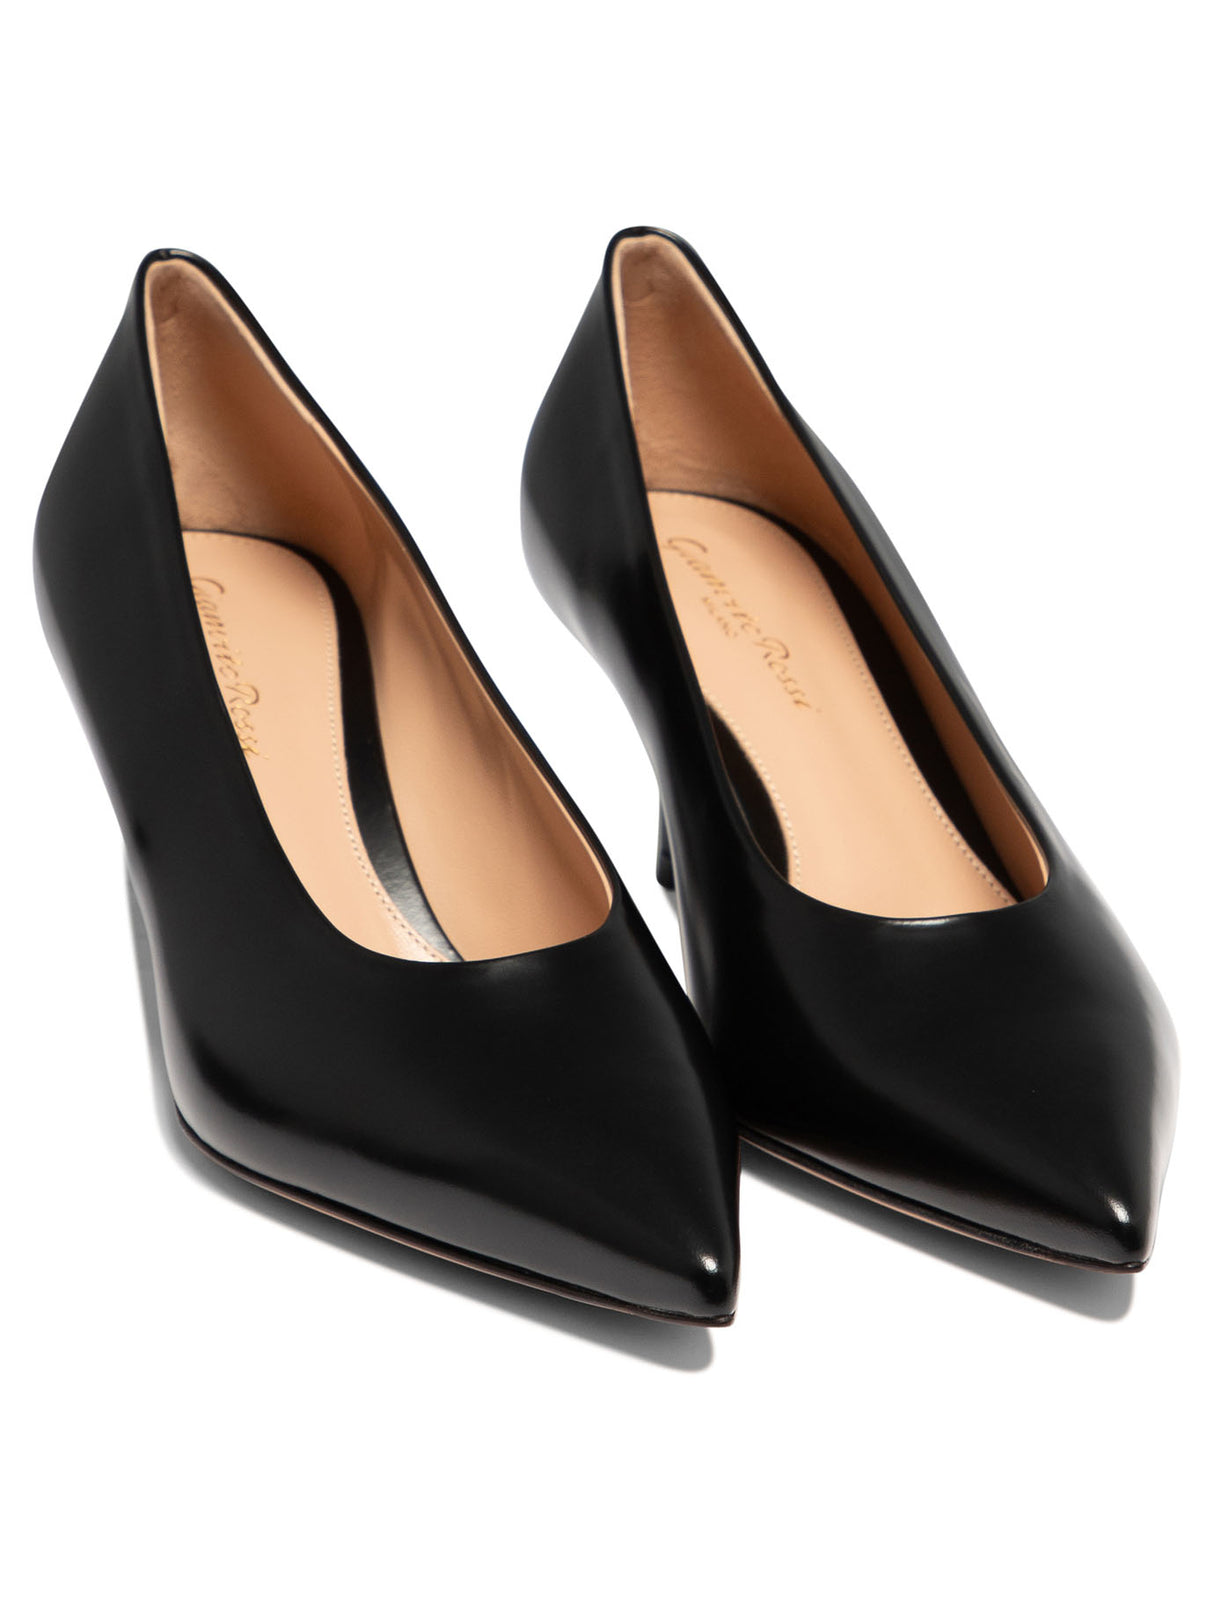 经典黑色皮革女式高跟鞋 - FW24系列